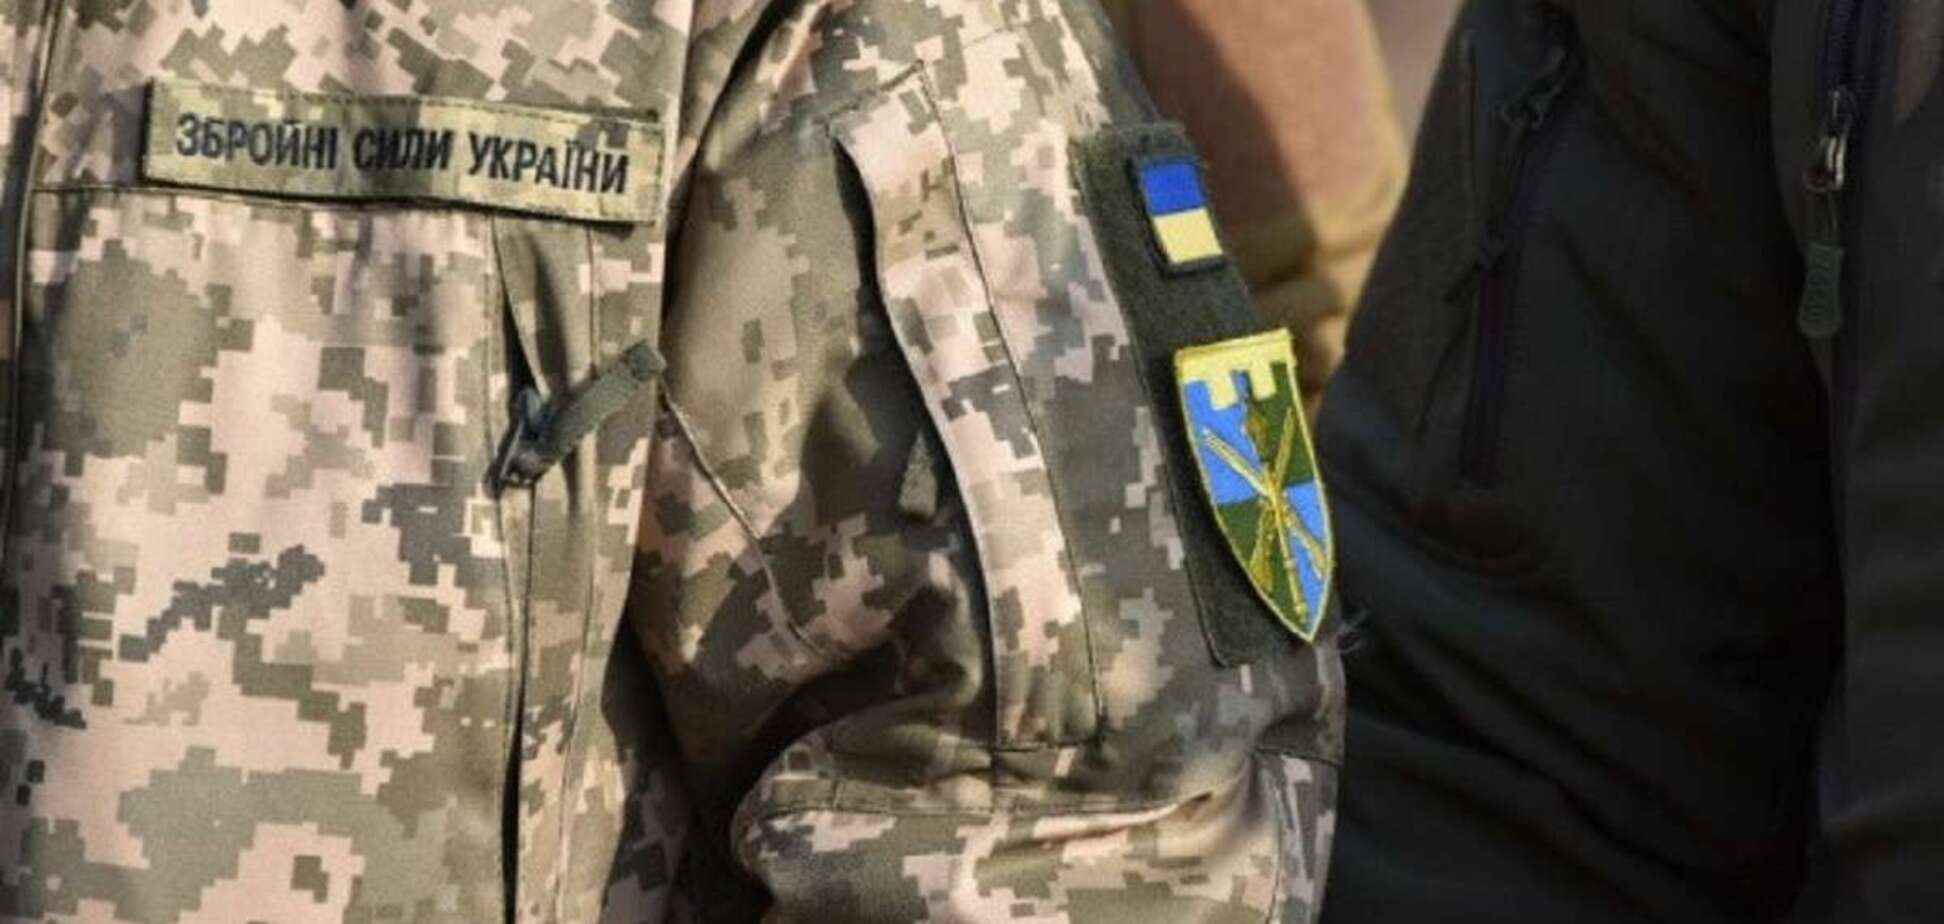 Україна бореться за весь світ, але їй потрібна підтримка: як допомогти українській армії